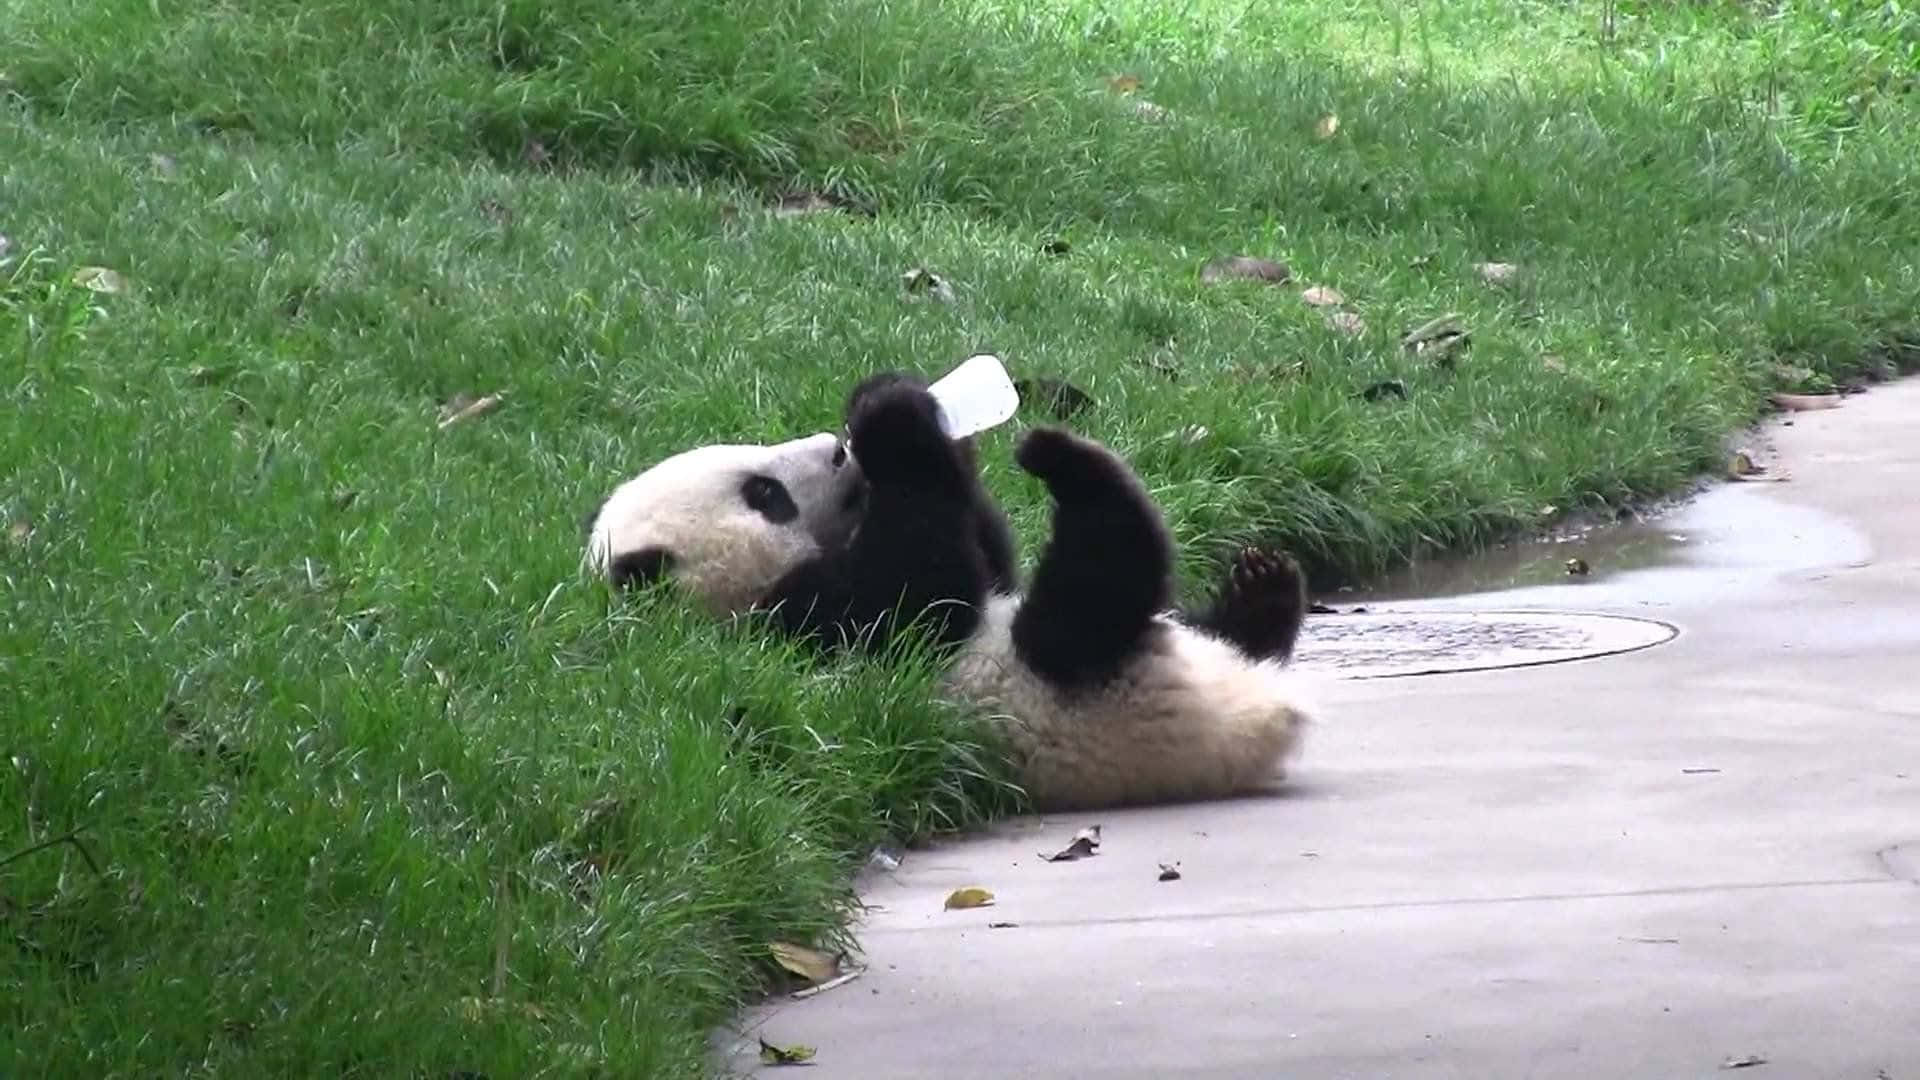 Umlindo Panda Desfrutando De Um Descanso E Relaxamento Em Um Ambiente Natural Ao Ar Livre.